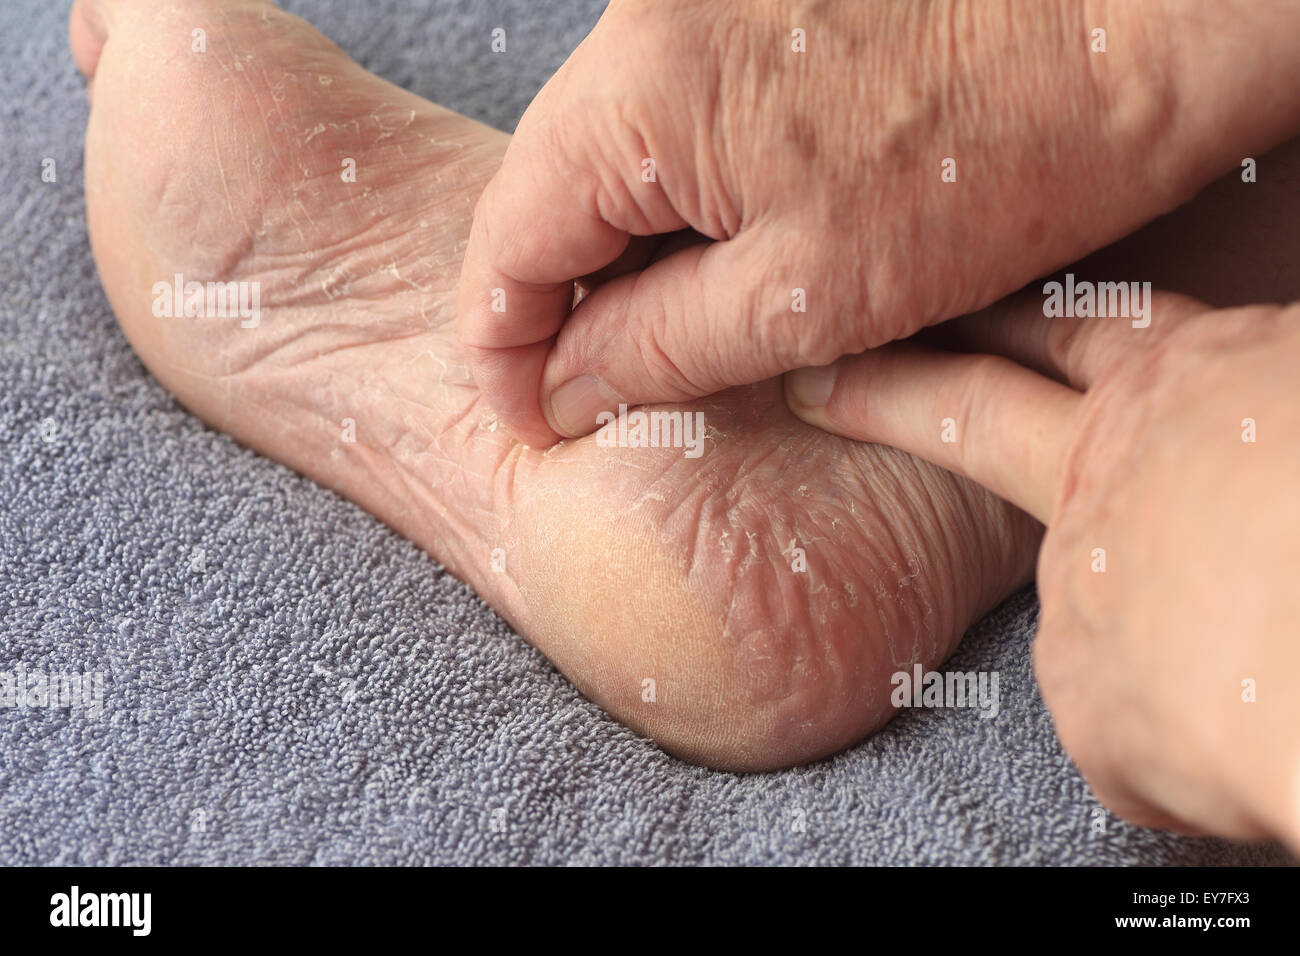 Un homme son peeling peau sèche de pied d'athlètes Banque D'Images